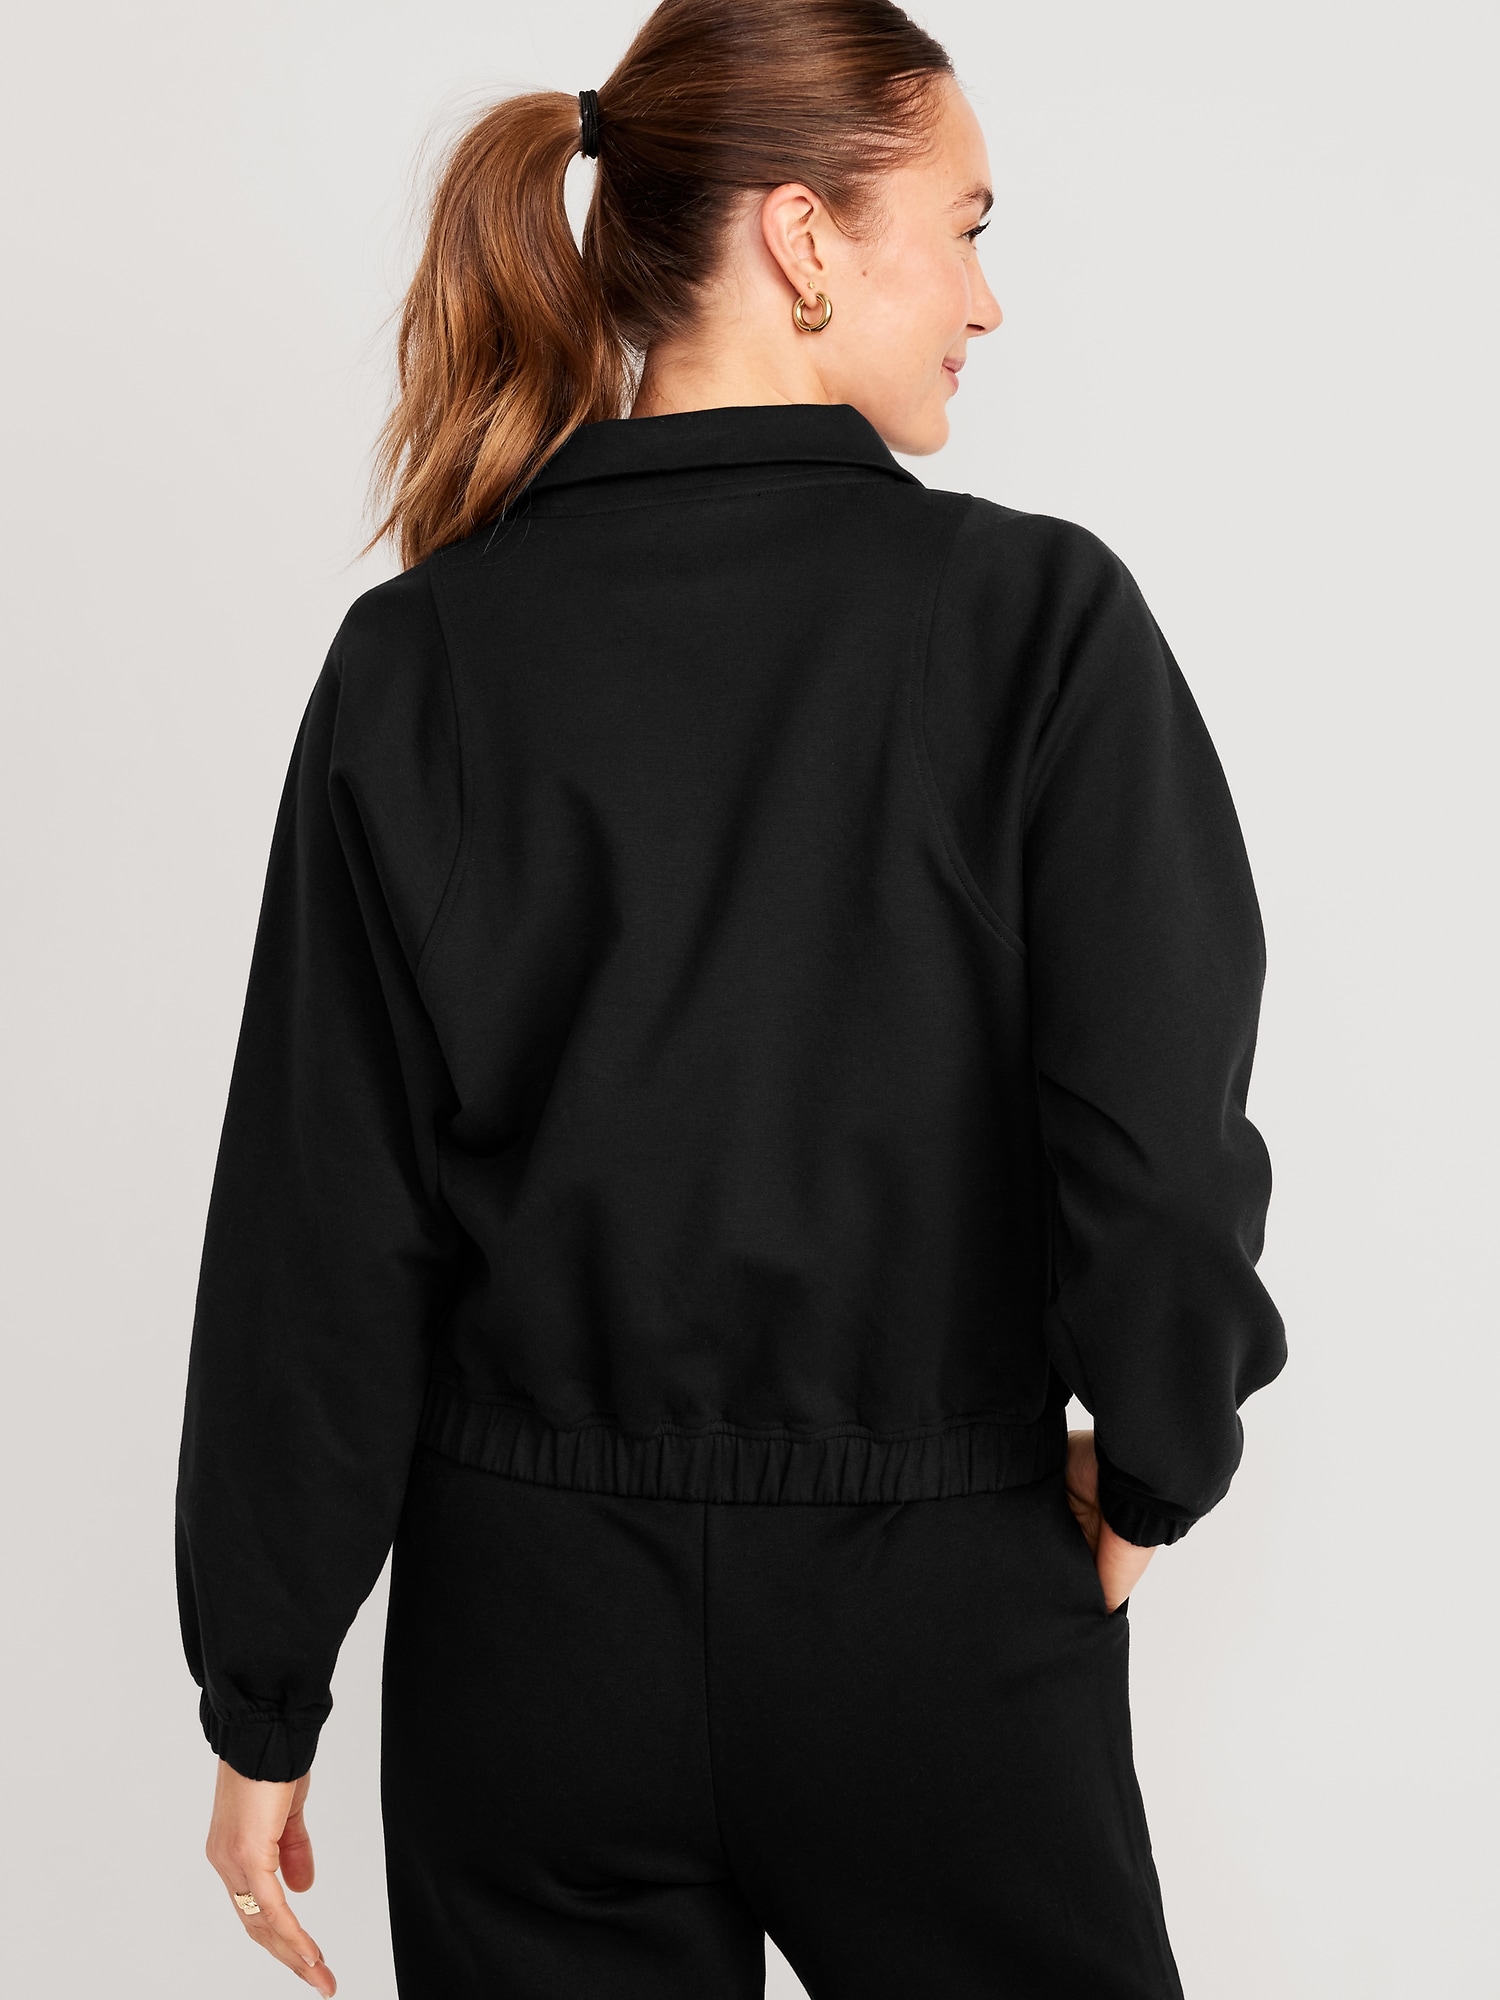 Dynamic Fleece Oversized Half Zip Sweatshirt